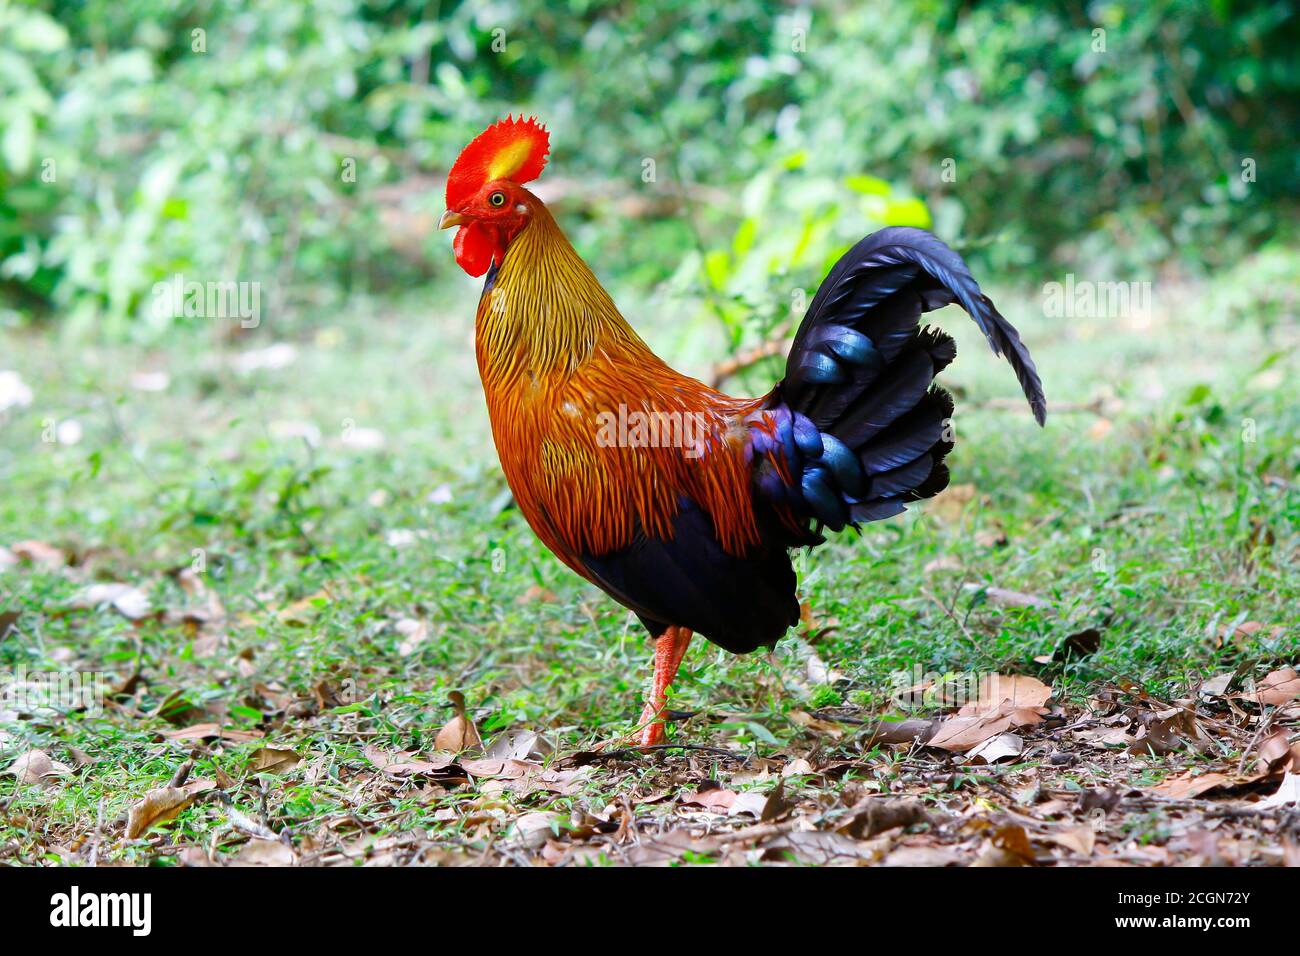 Männliches Sri Lanka Jungle Fowl, mit rotem Kopf und Rüschen, goldenem Hals, orangefarbenem Körper und glänzendem Indigoschwanz, steht im offenen Bereich des wilpattu Nationalpark jung Stockfoto